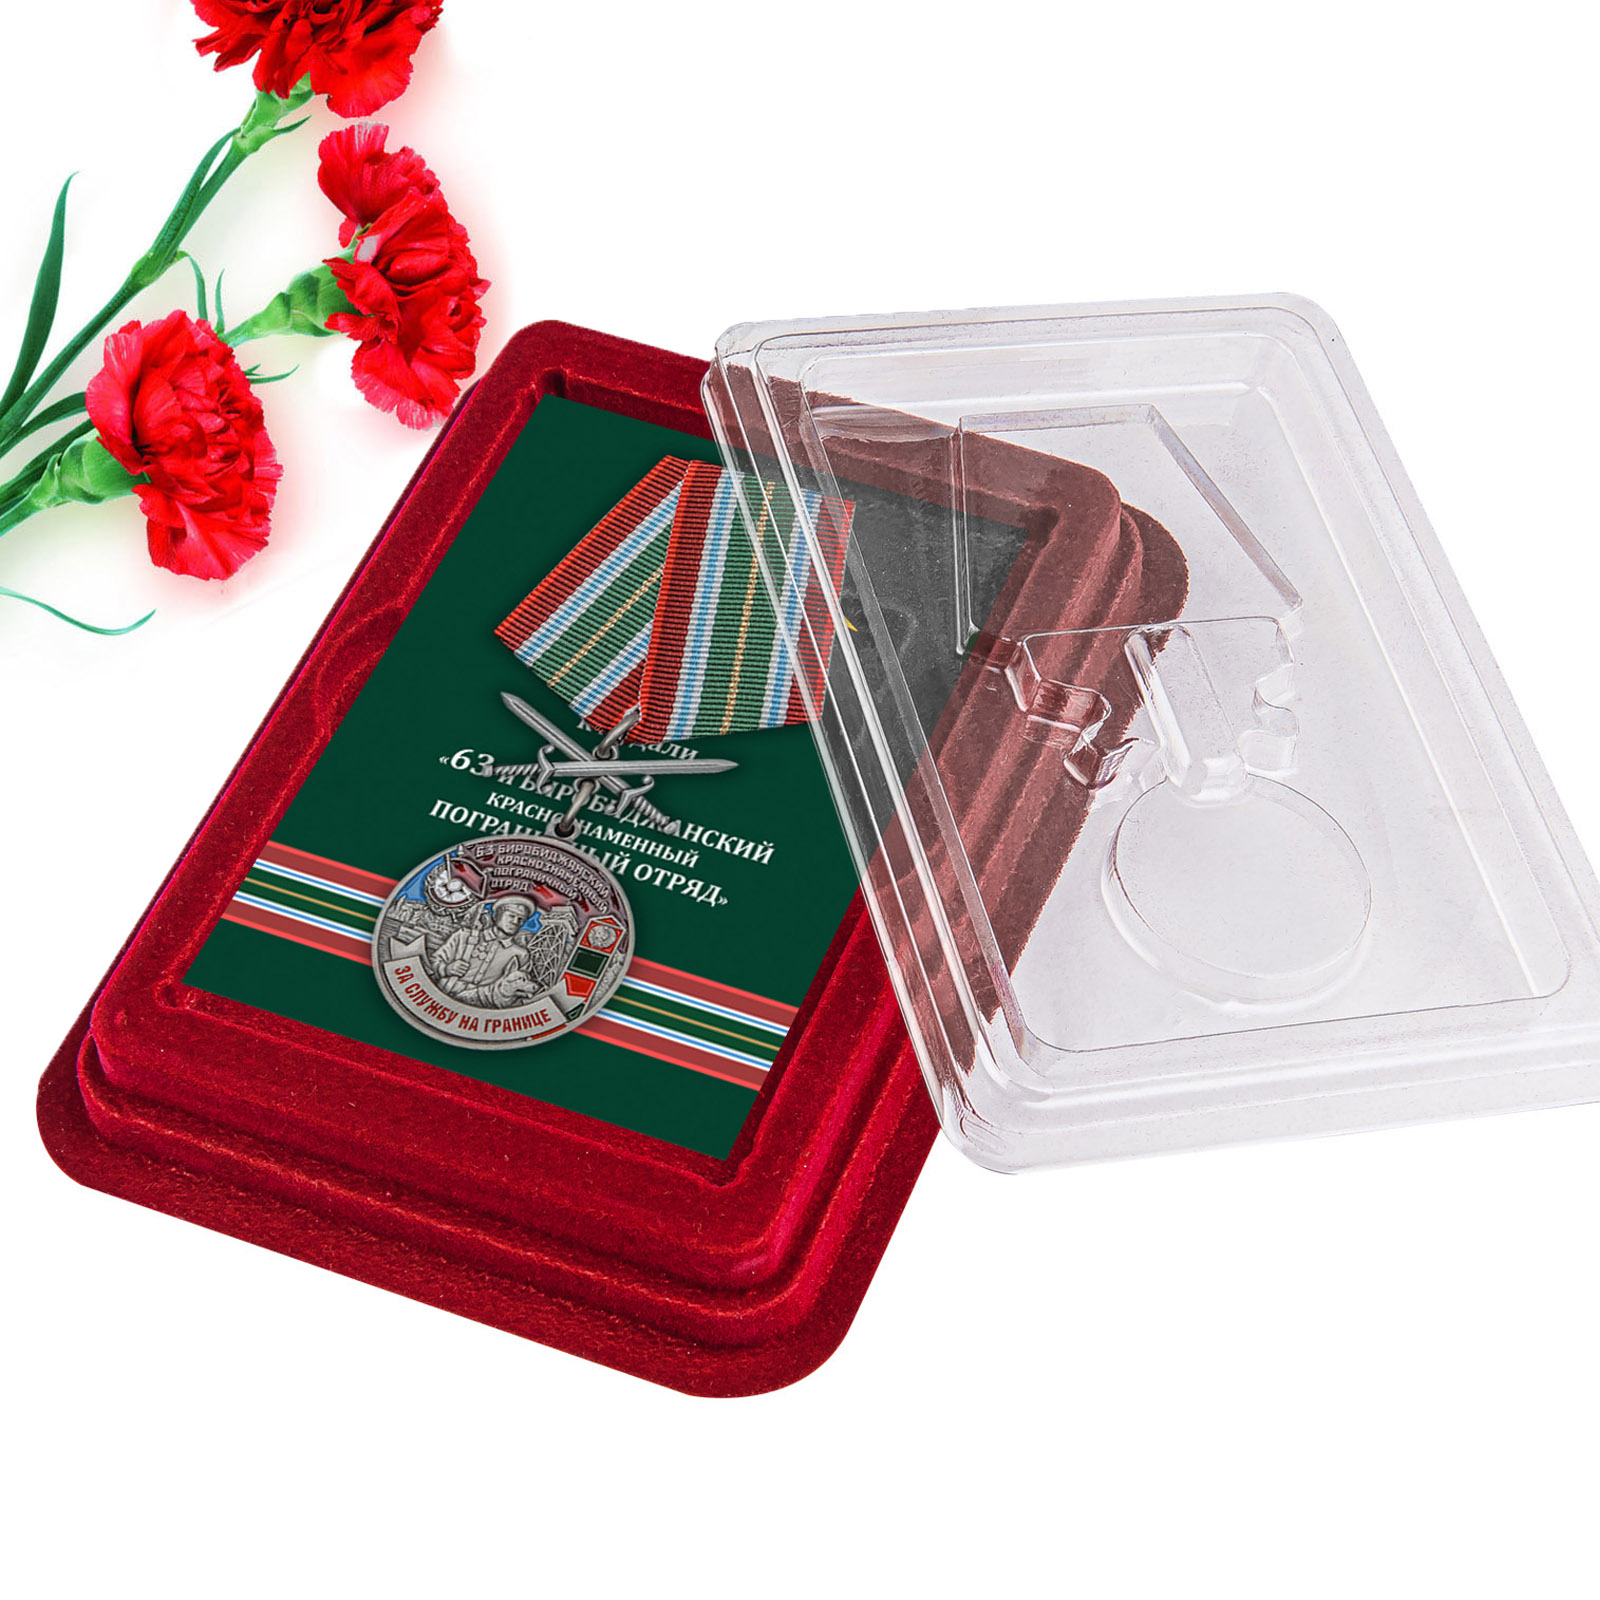 Купить медаль За службу в Биробиджанском пограничном отряде по лучшей цене